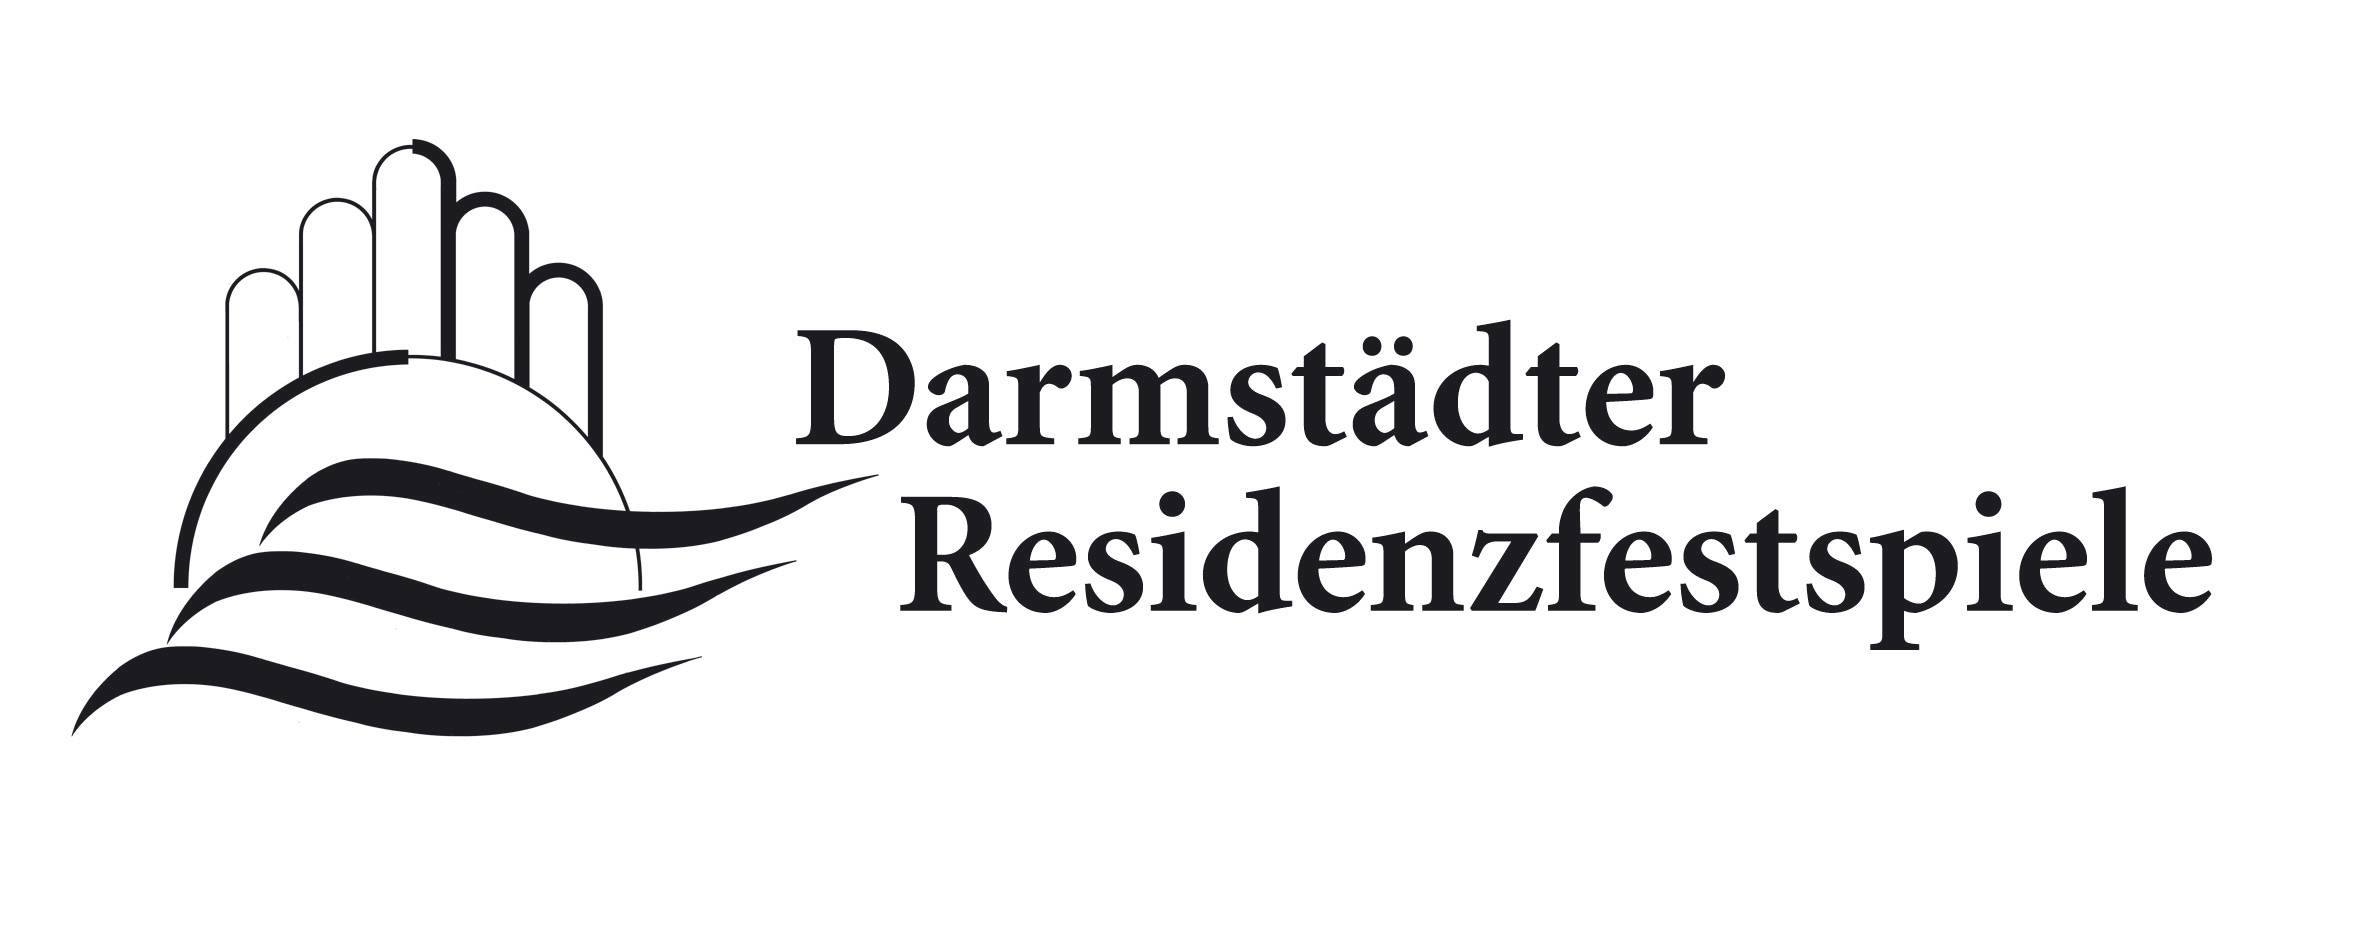 Konzertchor Darmstadt und Darmstädter Residenzfestspiele